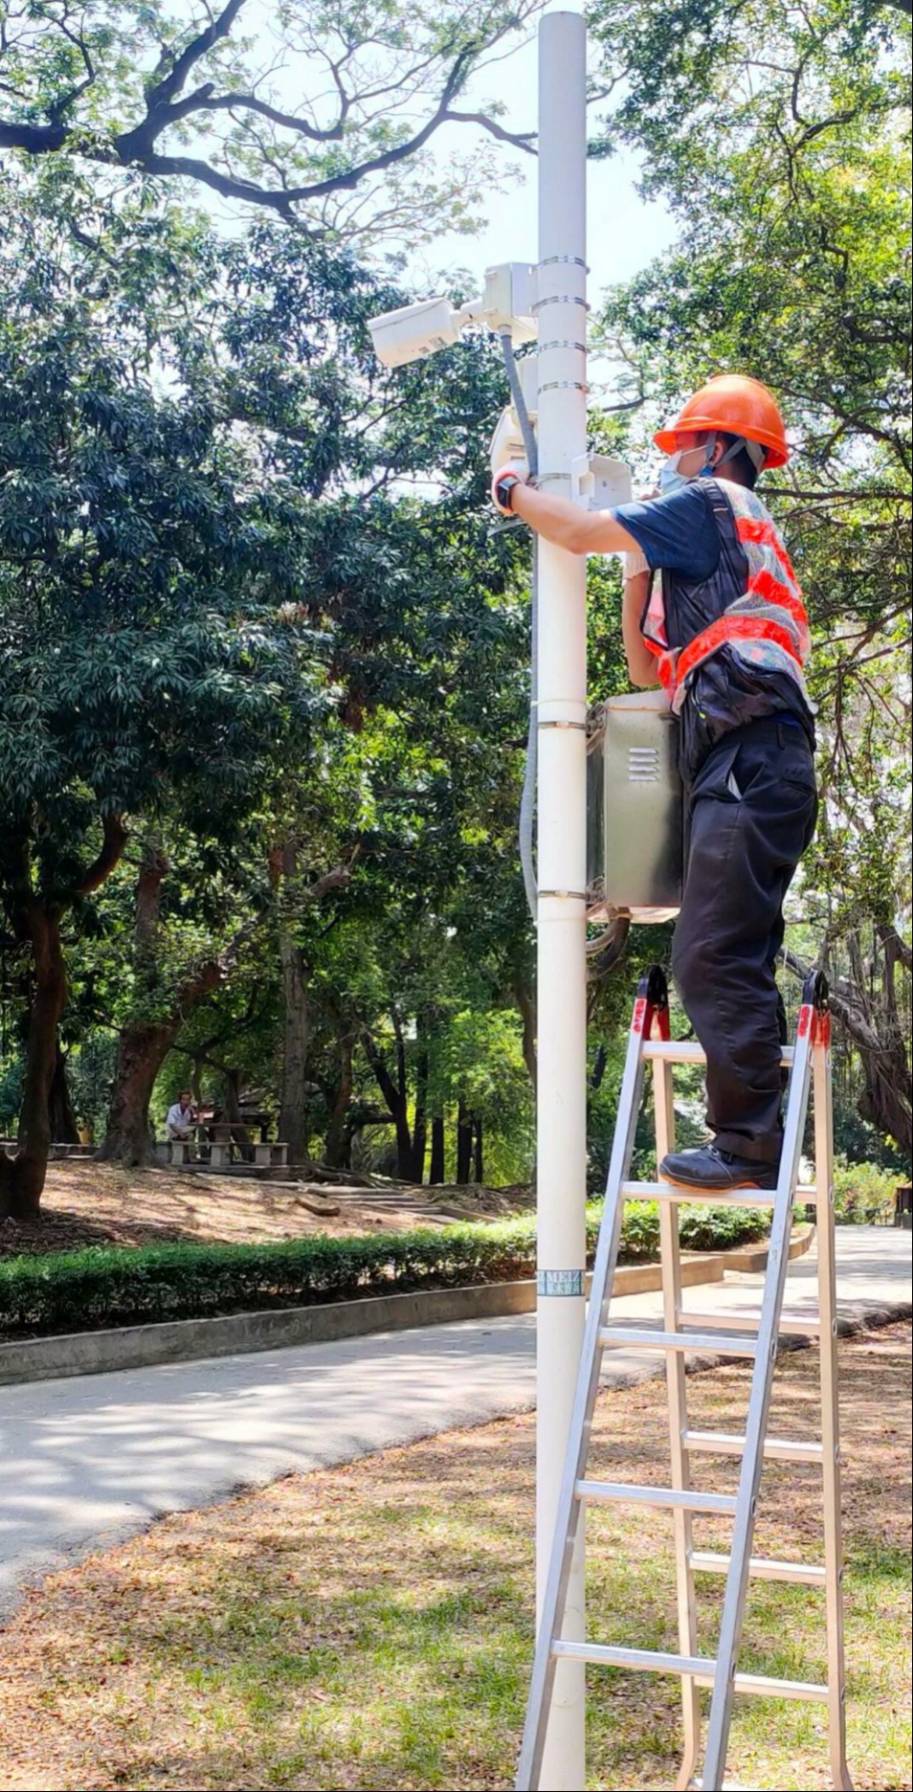 臺南公園 6月1日導入科技執法取締違規車輛  呼籲民眾共同維護公園環境